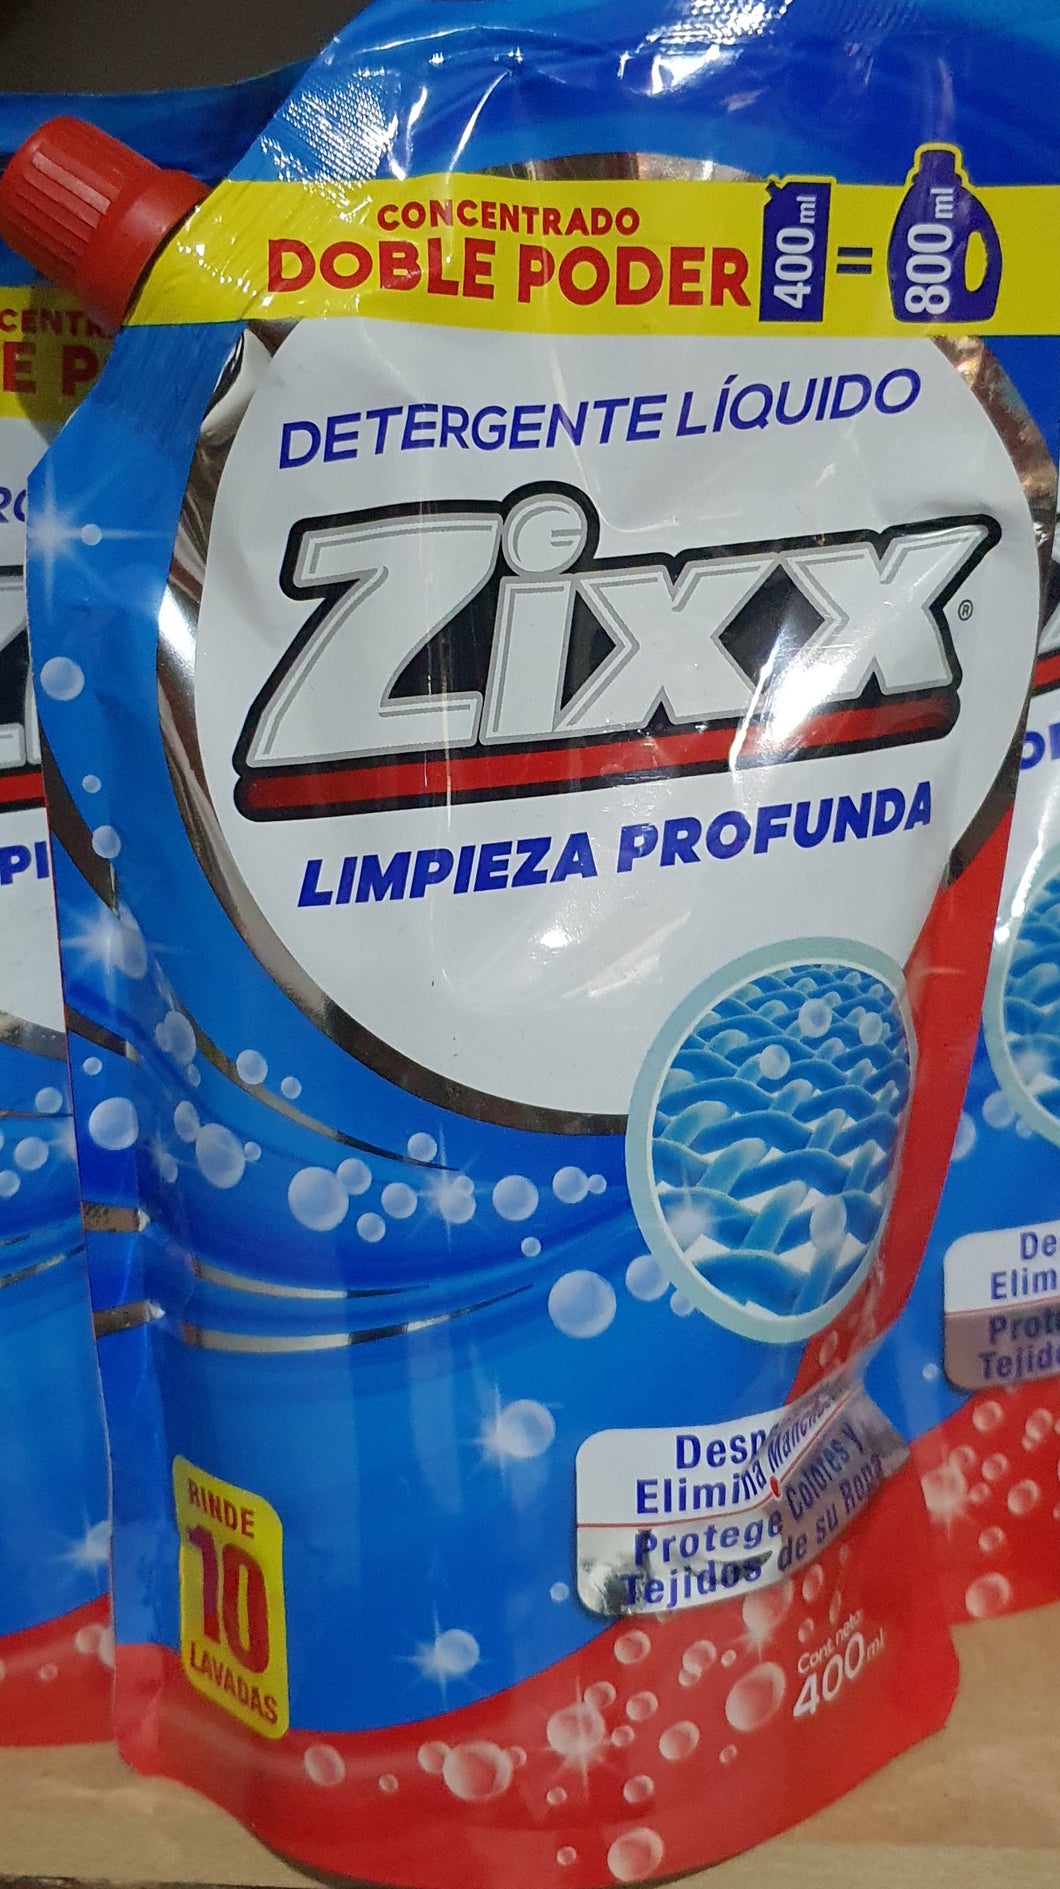 DETERGENTE LIQUIDO ZIXX 400 ML